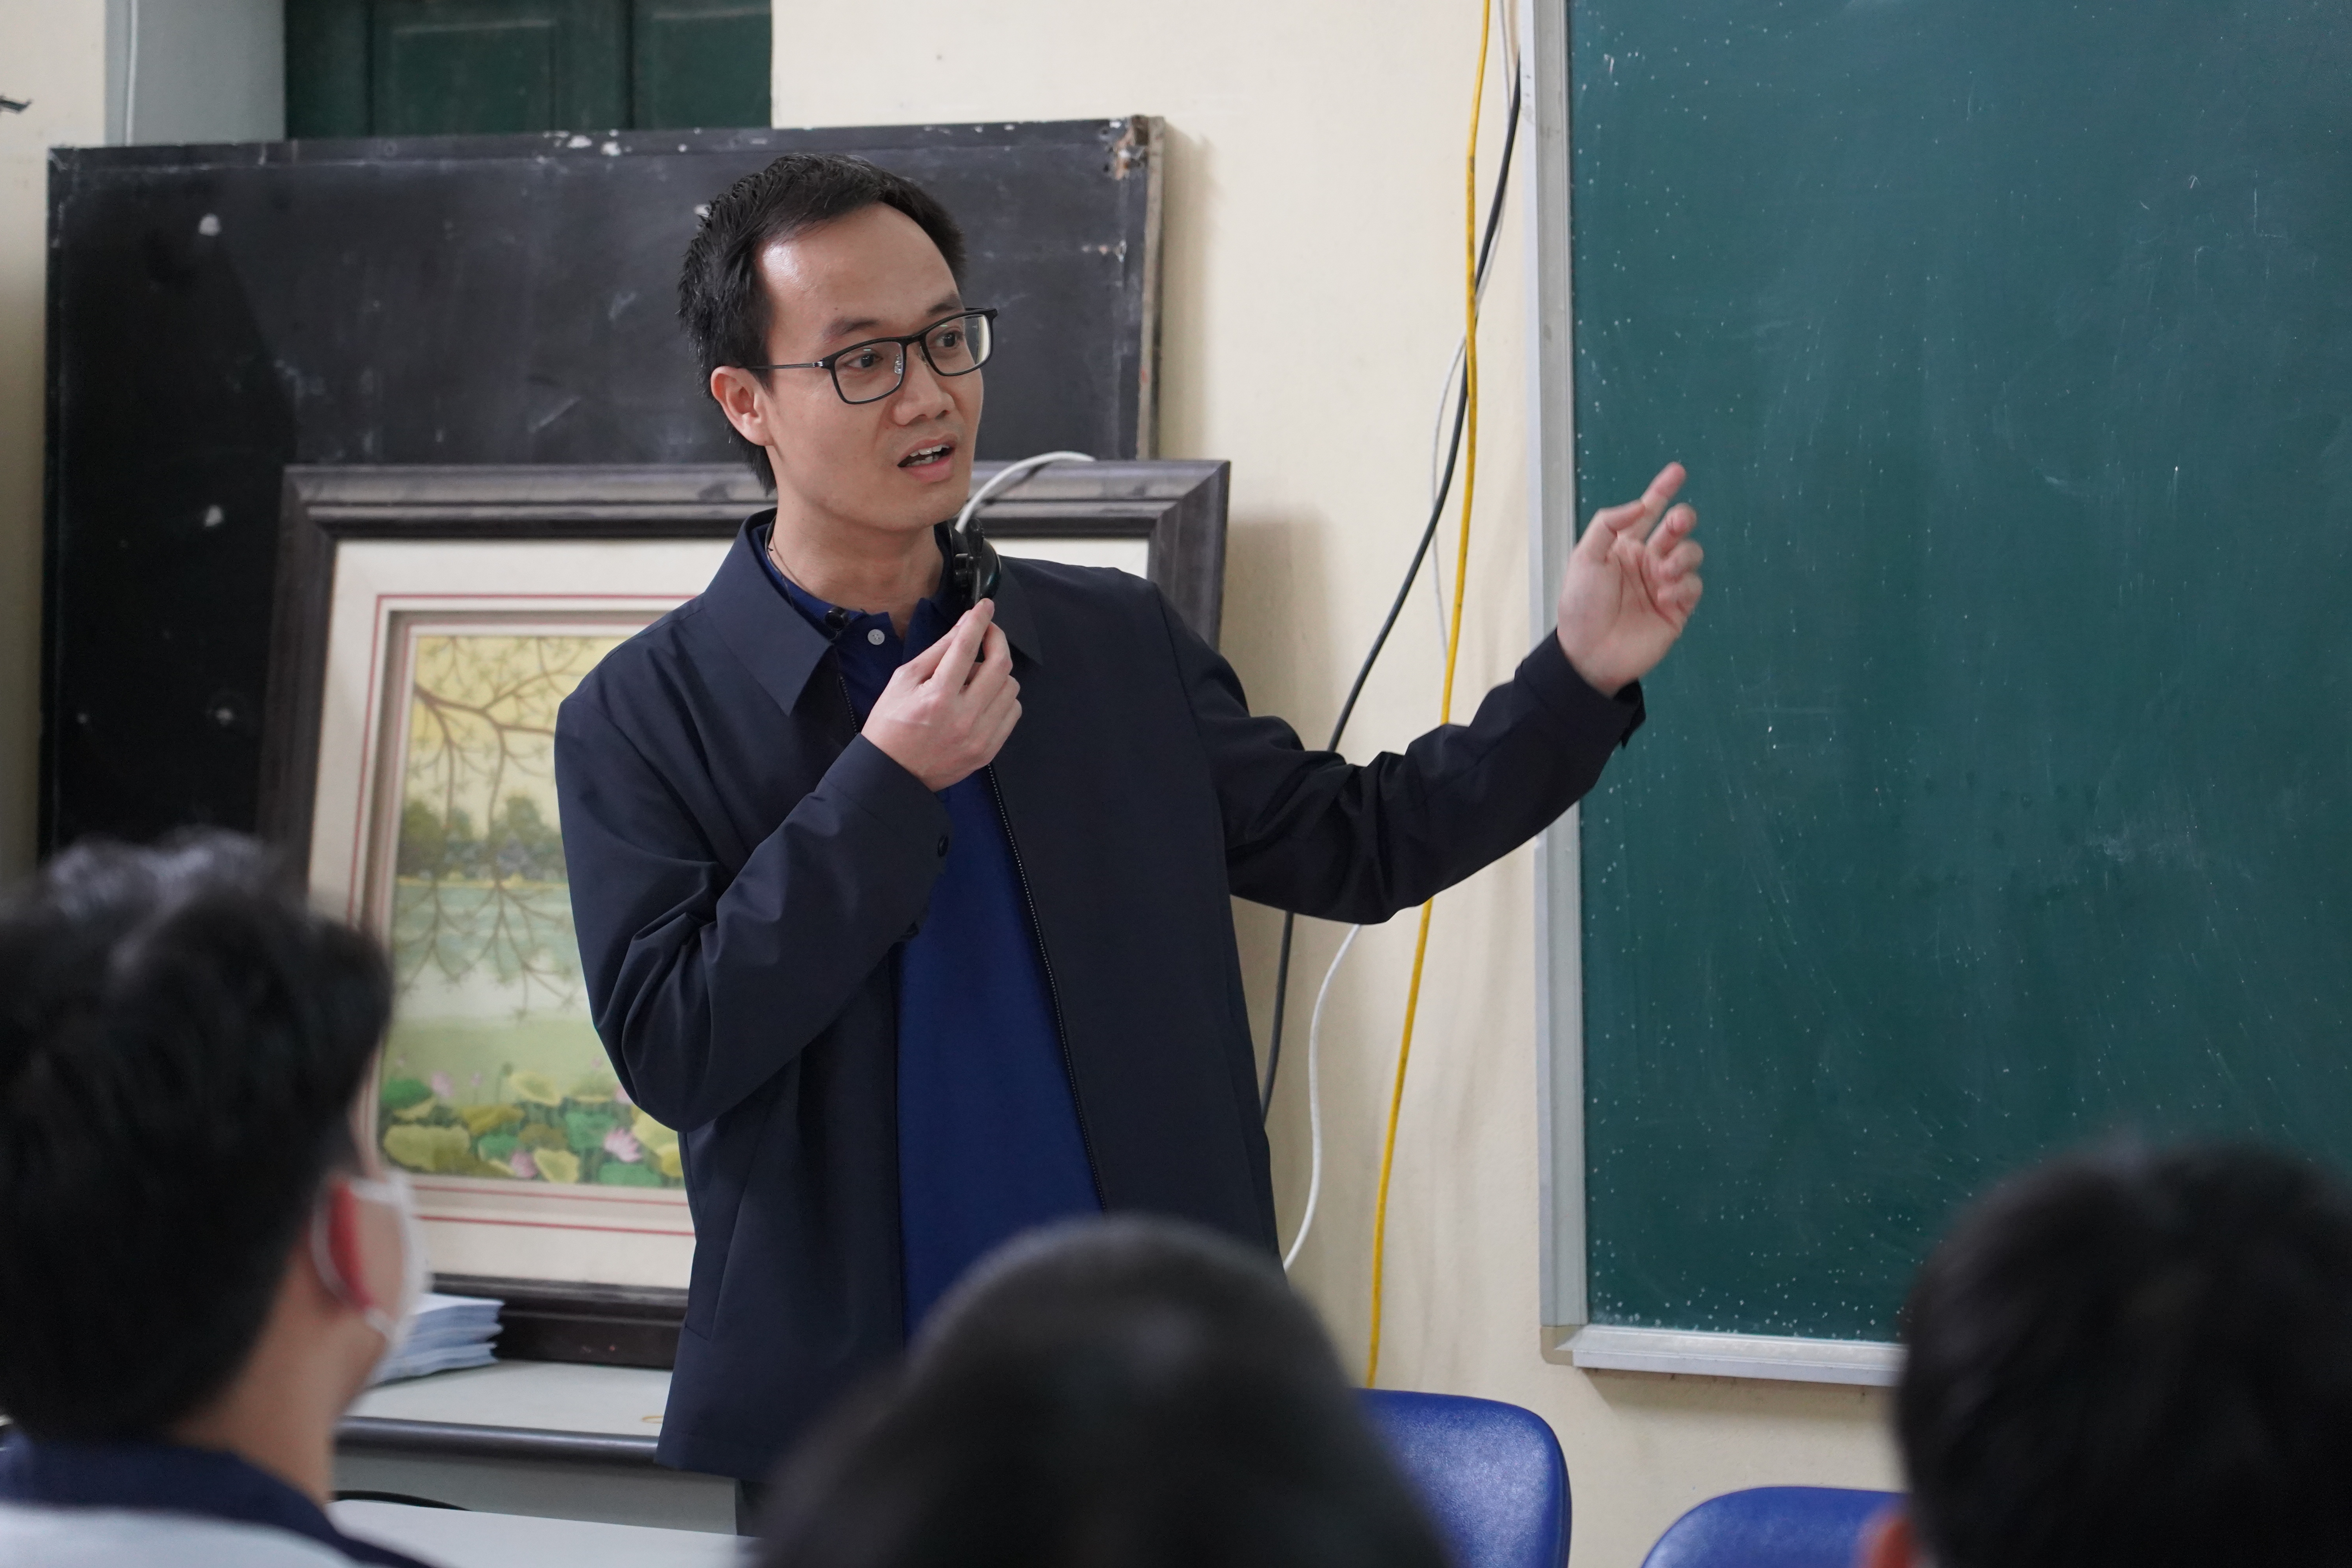 Trường Đại học Khoa học Tự nhiên đồng hành cùng thầy và trò Trường THPT Nguyễn Trãi, Thái Bình trong hoạt động tư vấn hướng nghiệp và tuyển sinh